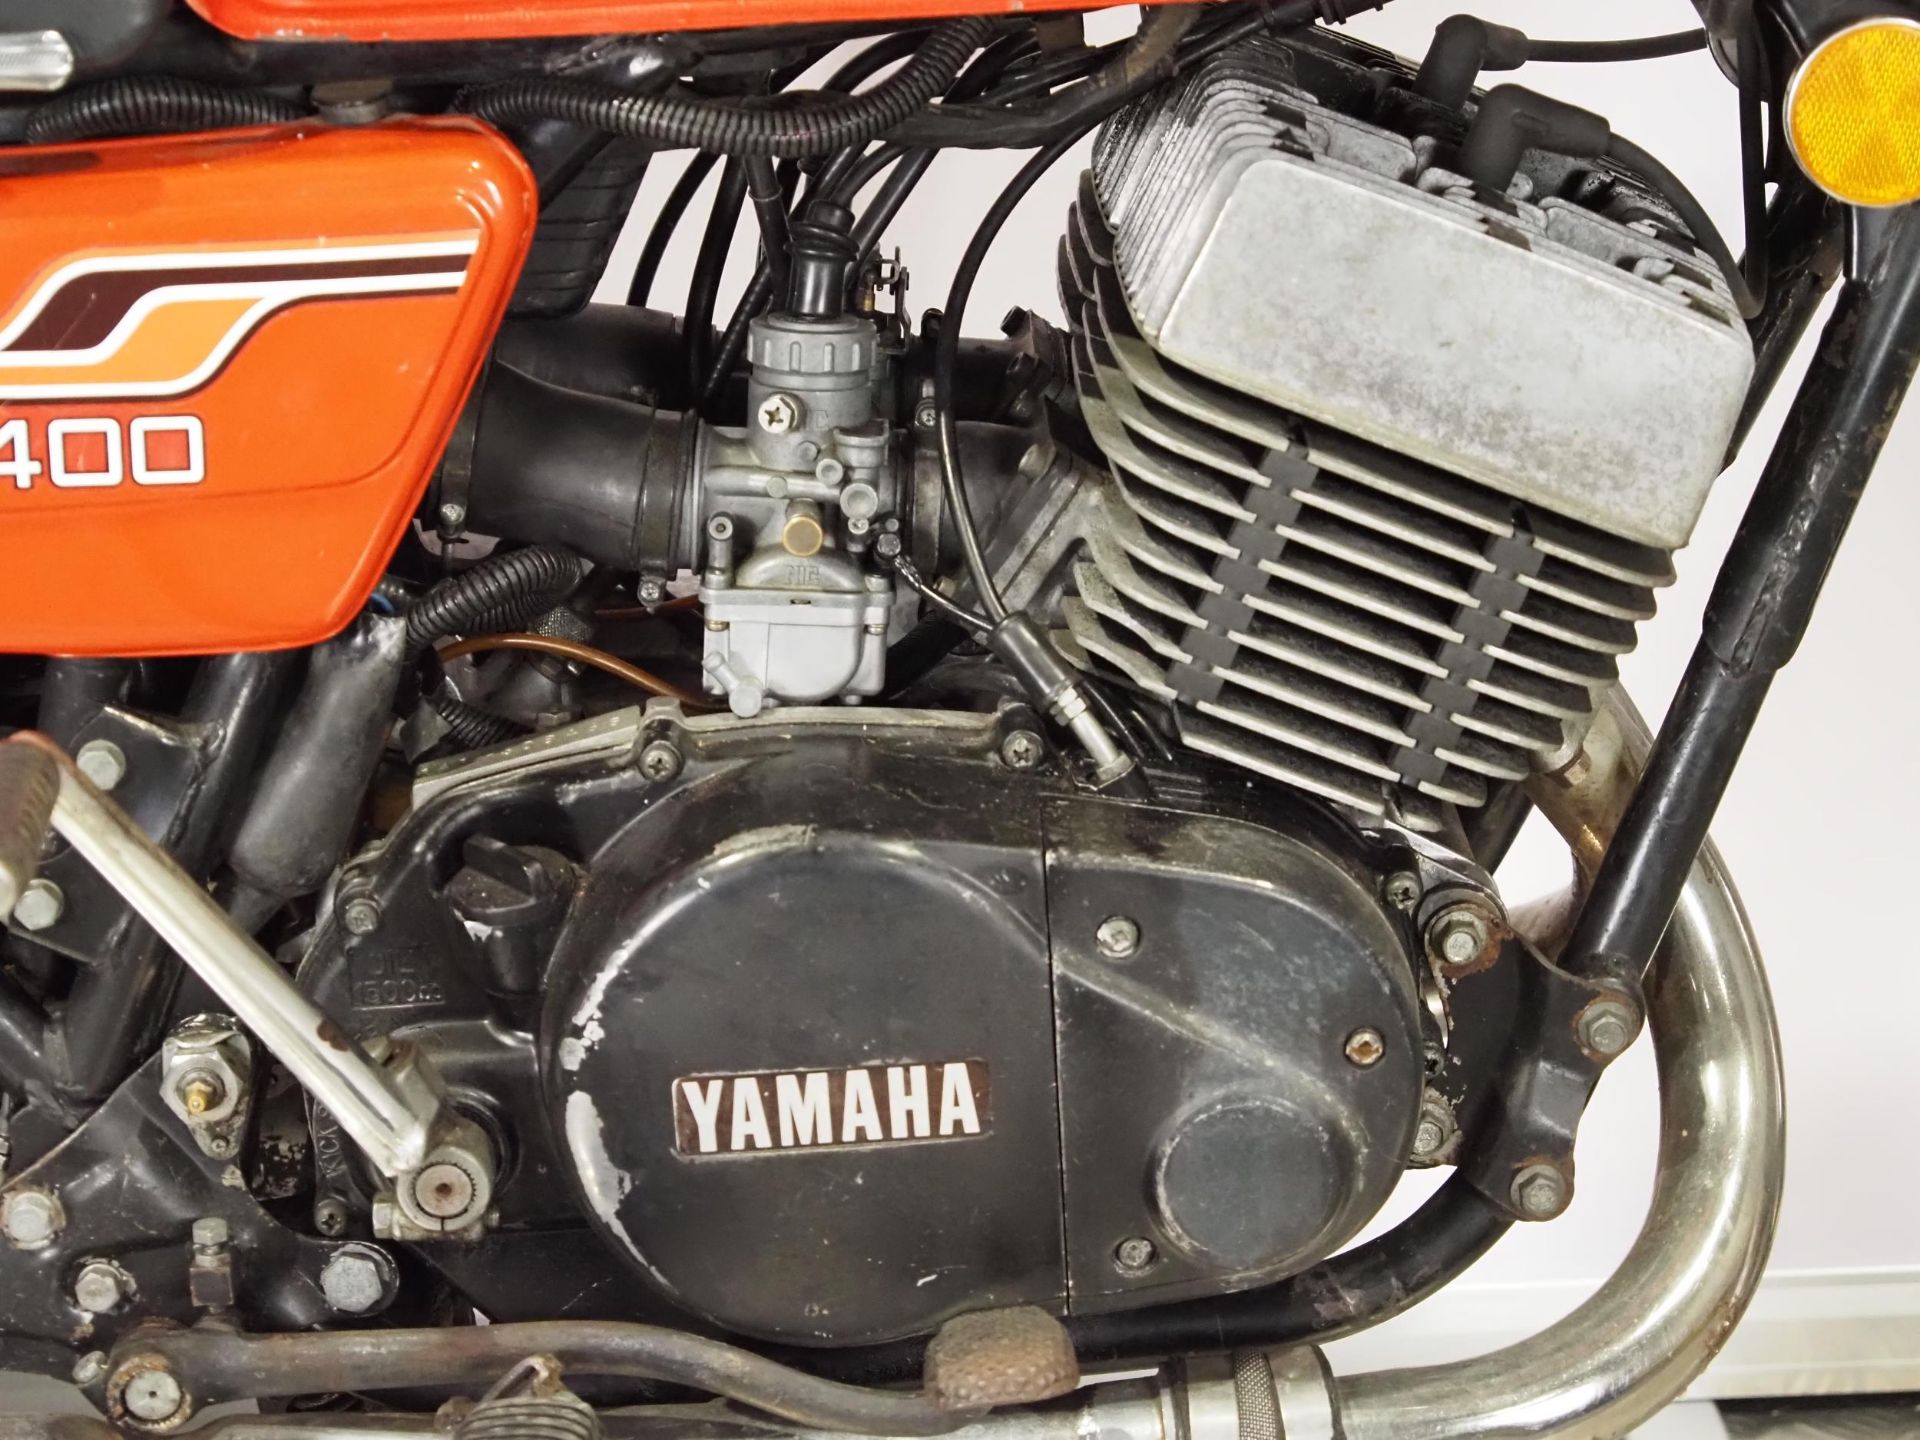 Yamaha RD400 motorcycle. 1976. 399cc. Frame No. 1A1008827 Engine No. 1A1-308468 Runs and rides. - Image 4 of 6